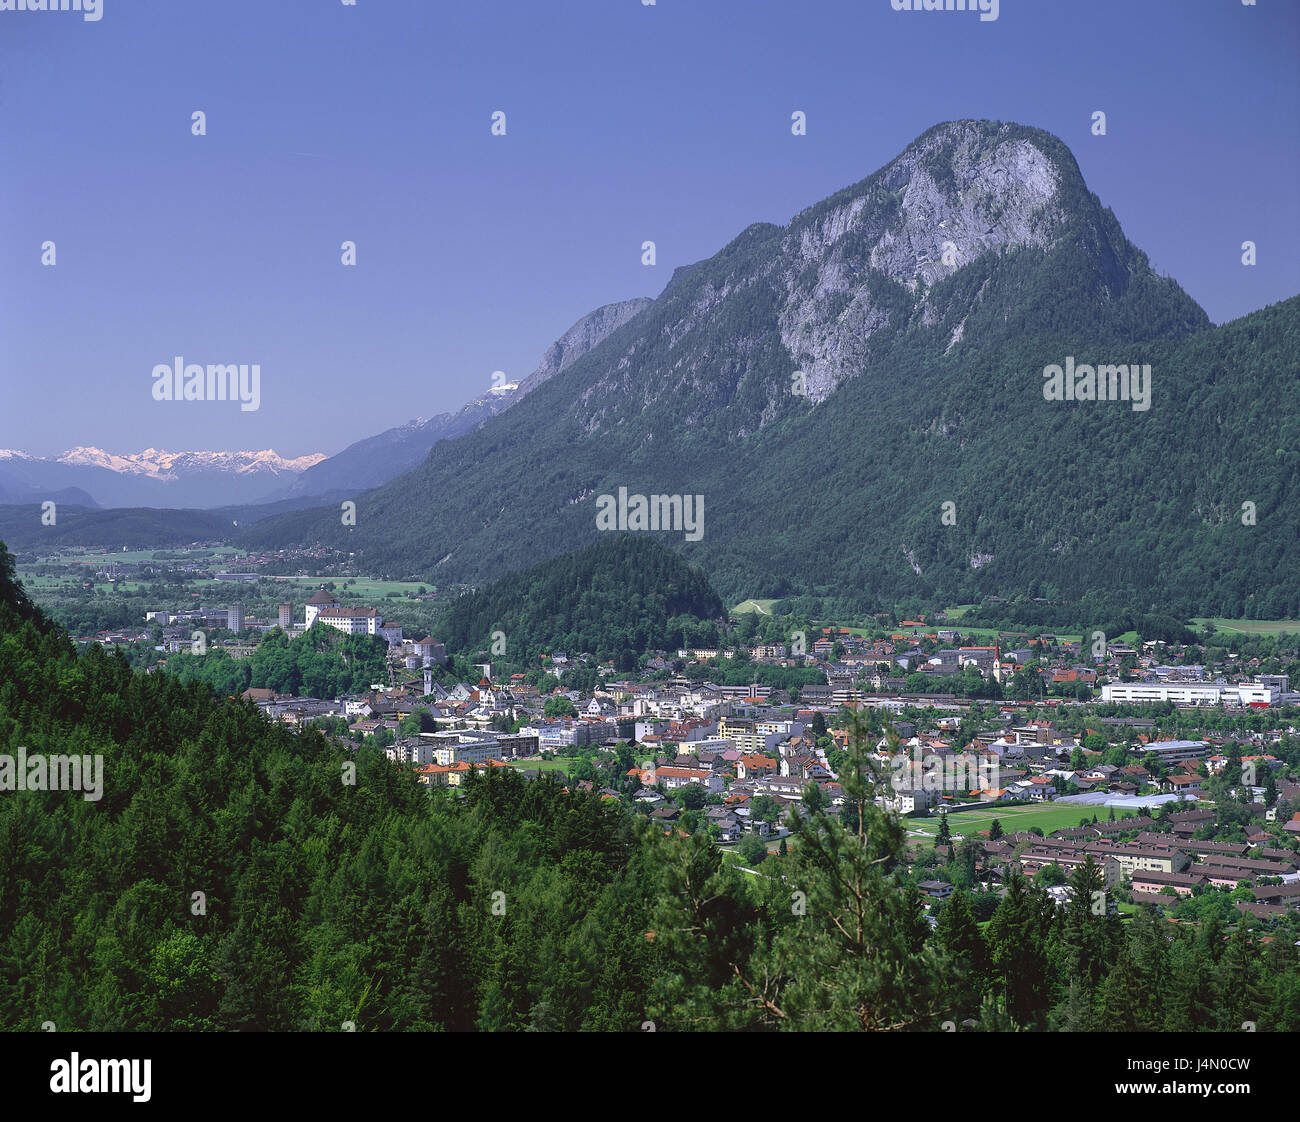 Austria, Tyrol, Kufstein, town view, mountain Pendling, background the Stubai Alps, scenery, view, town, sky, cloudless, Stock Photo